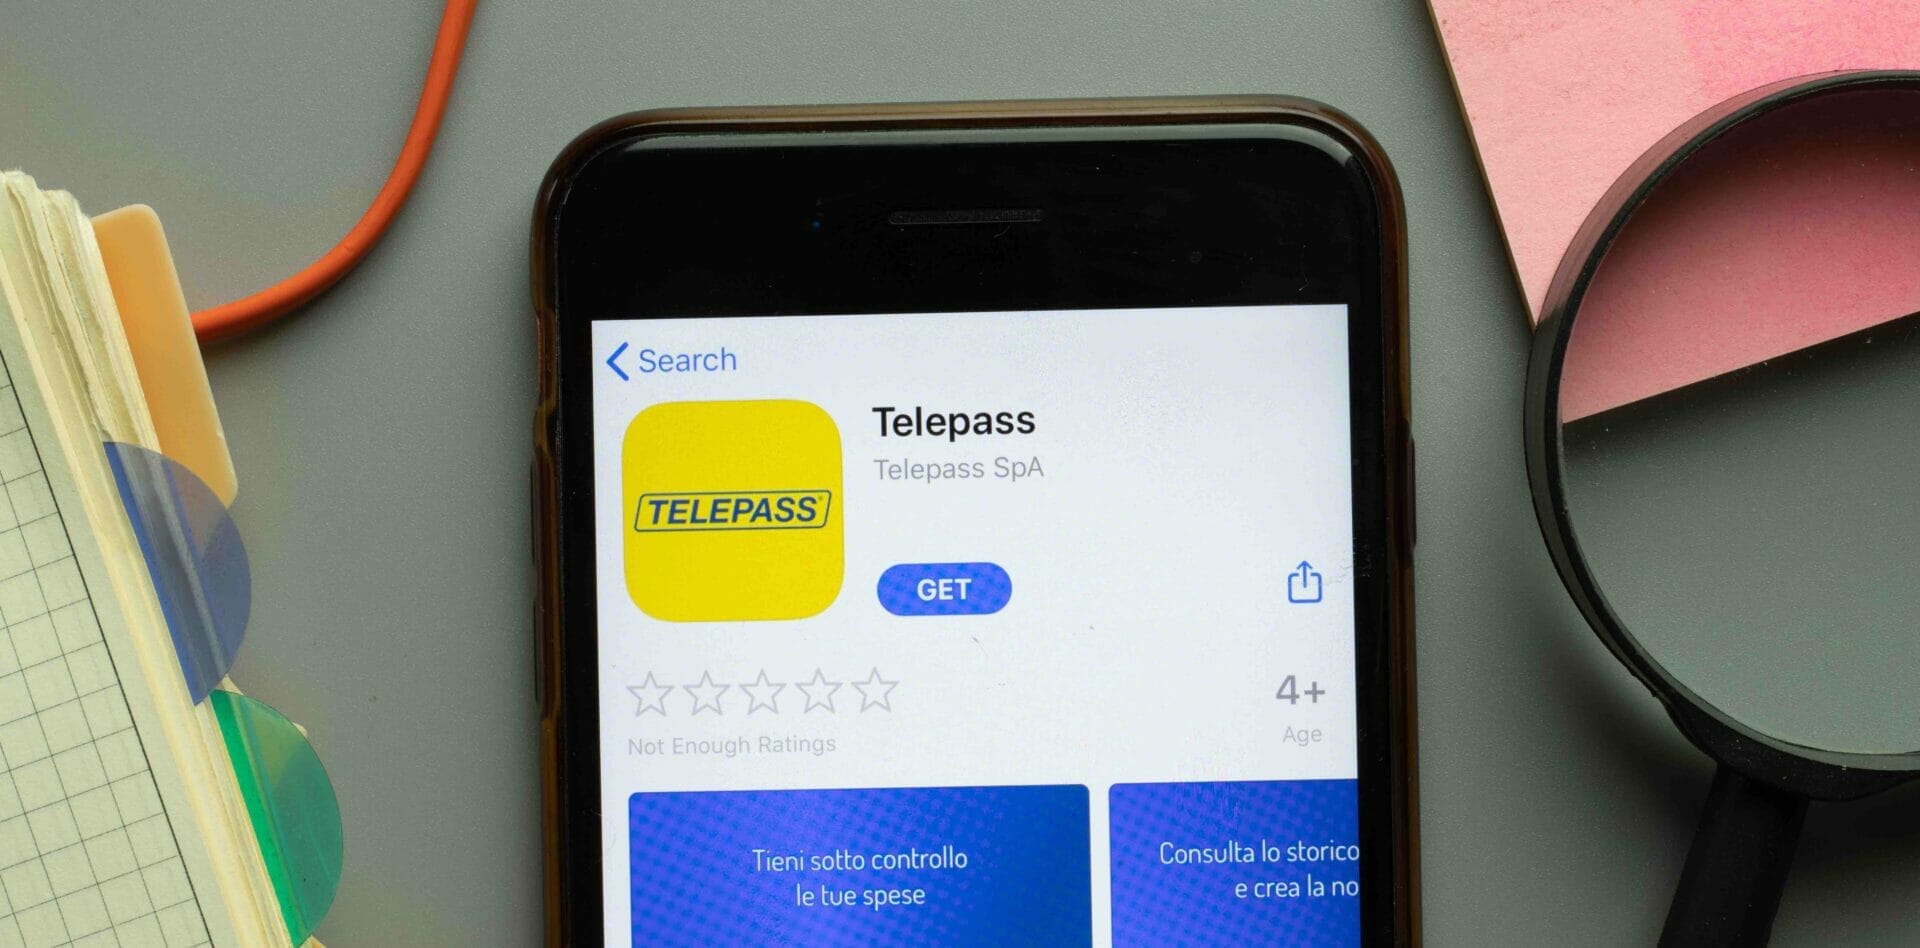 telepass